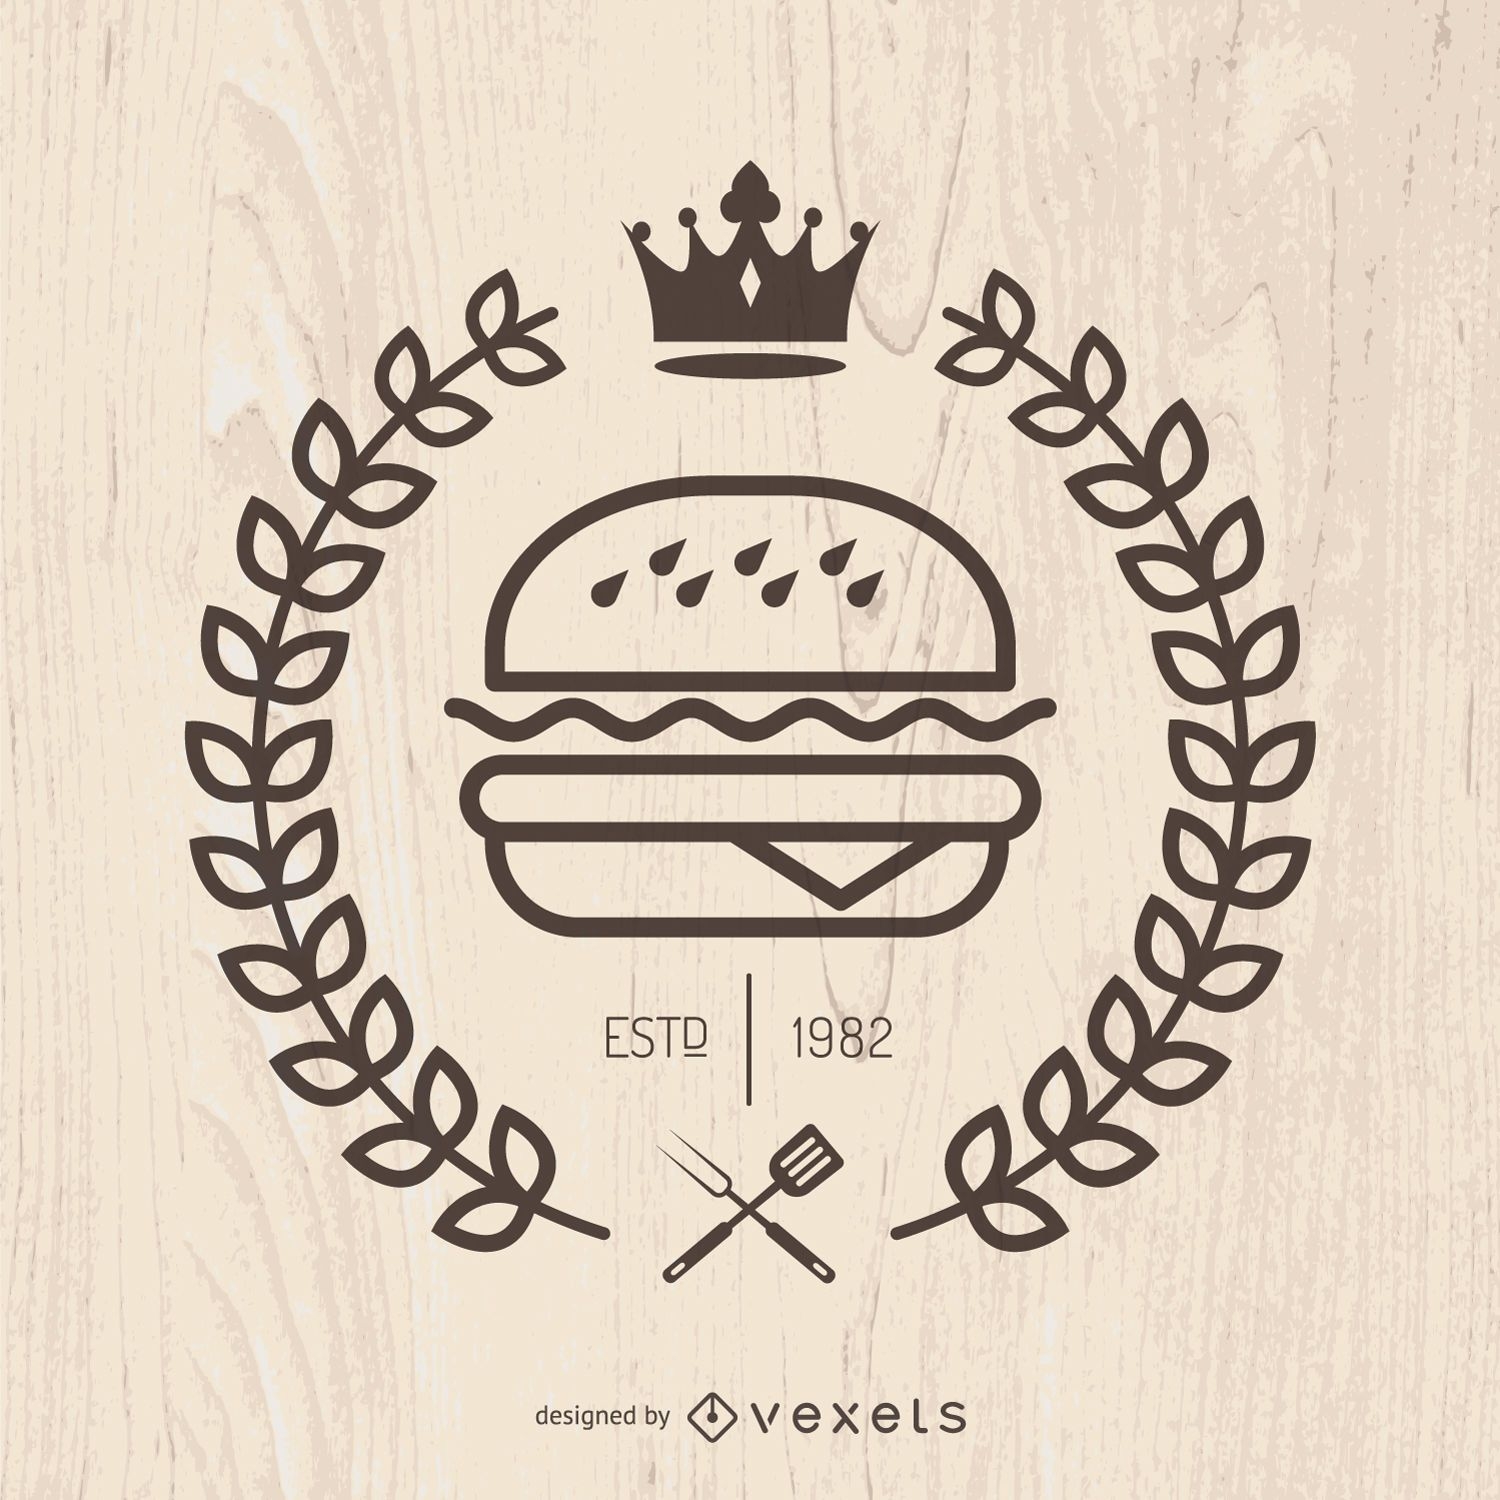 Emblema de fast food Hispter